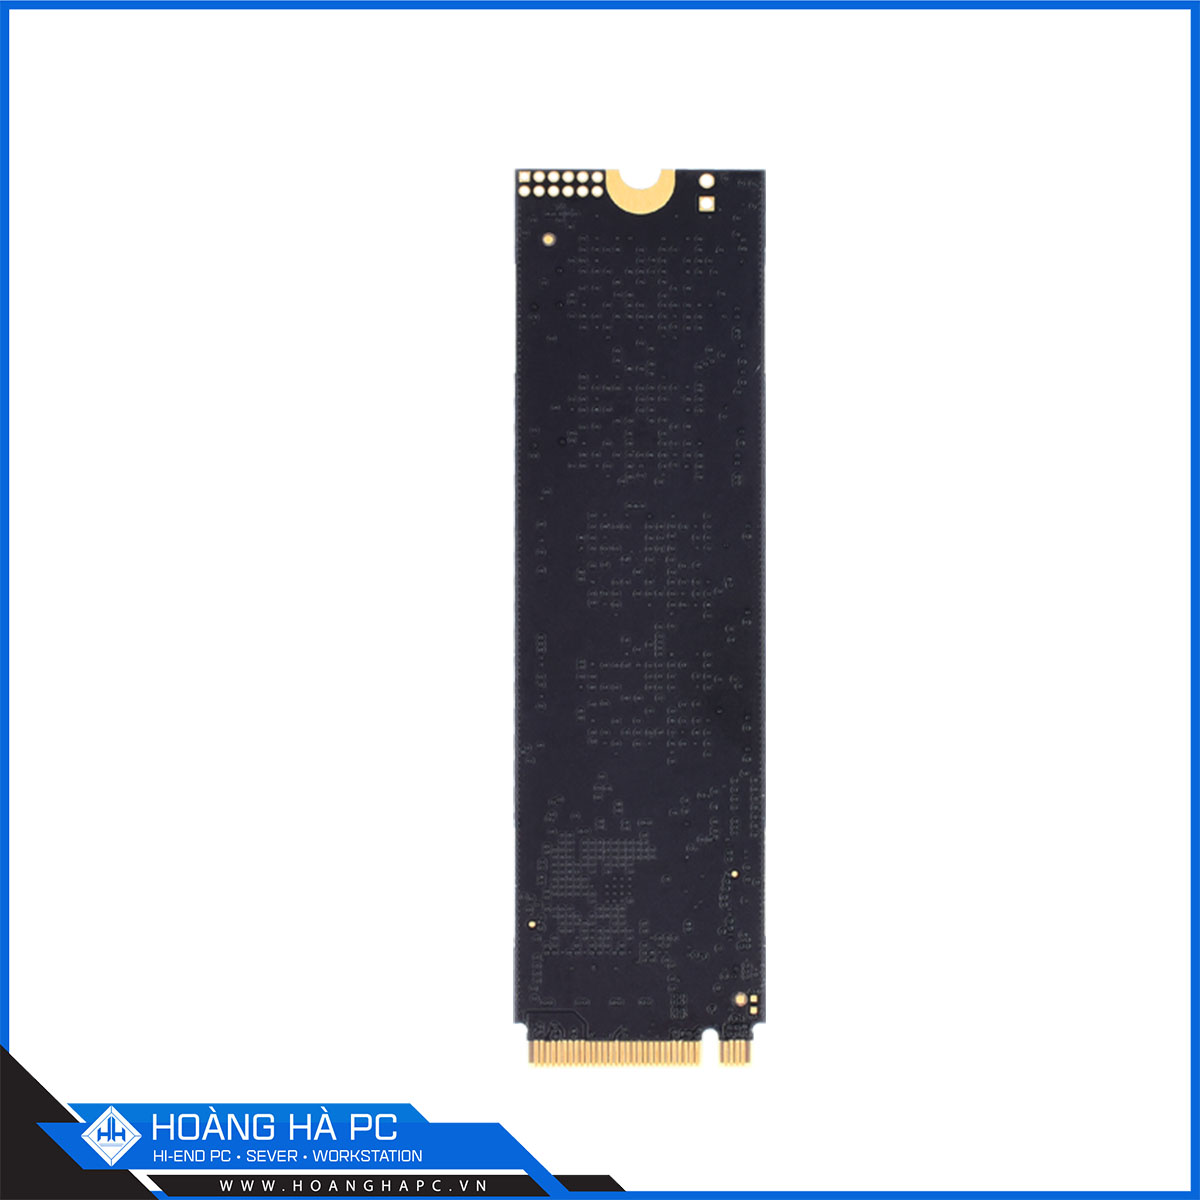 Ổ cứng SSD Apacer AS2280P4 M.2 PCIE 256G PCI-E Gen3x4 (Đọc 2100MB/s - Ghi 1300MB/s)